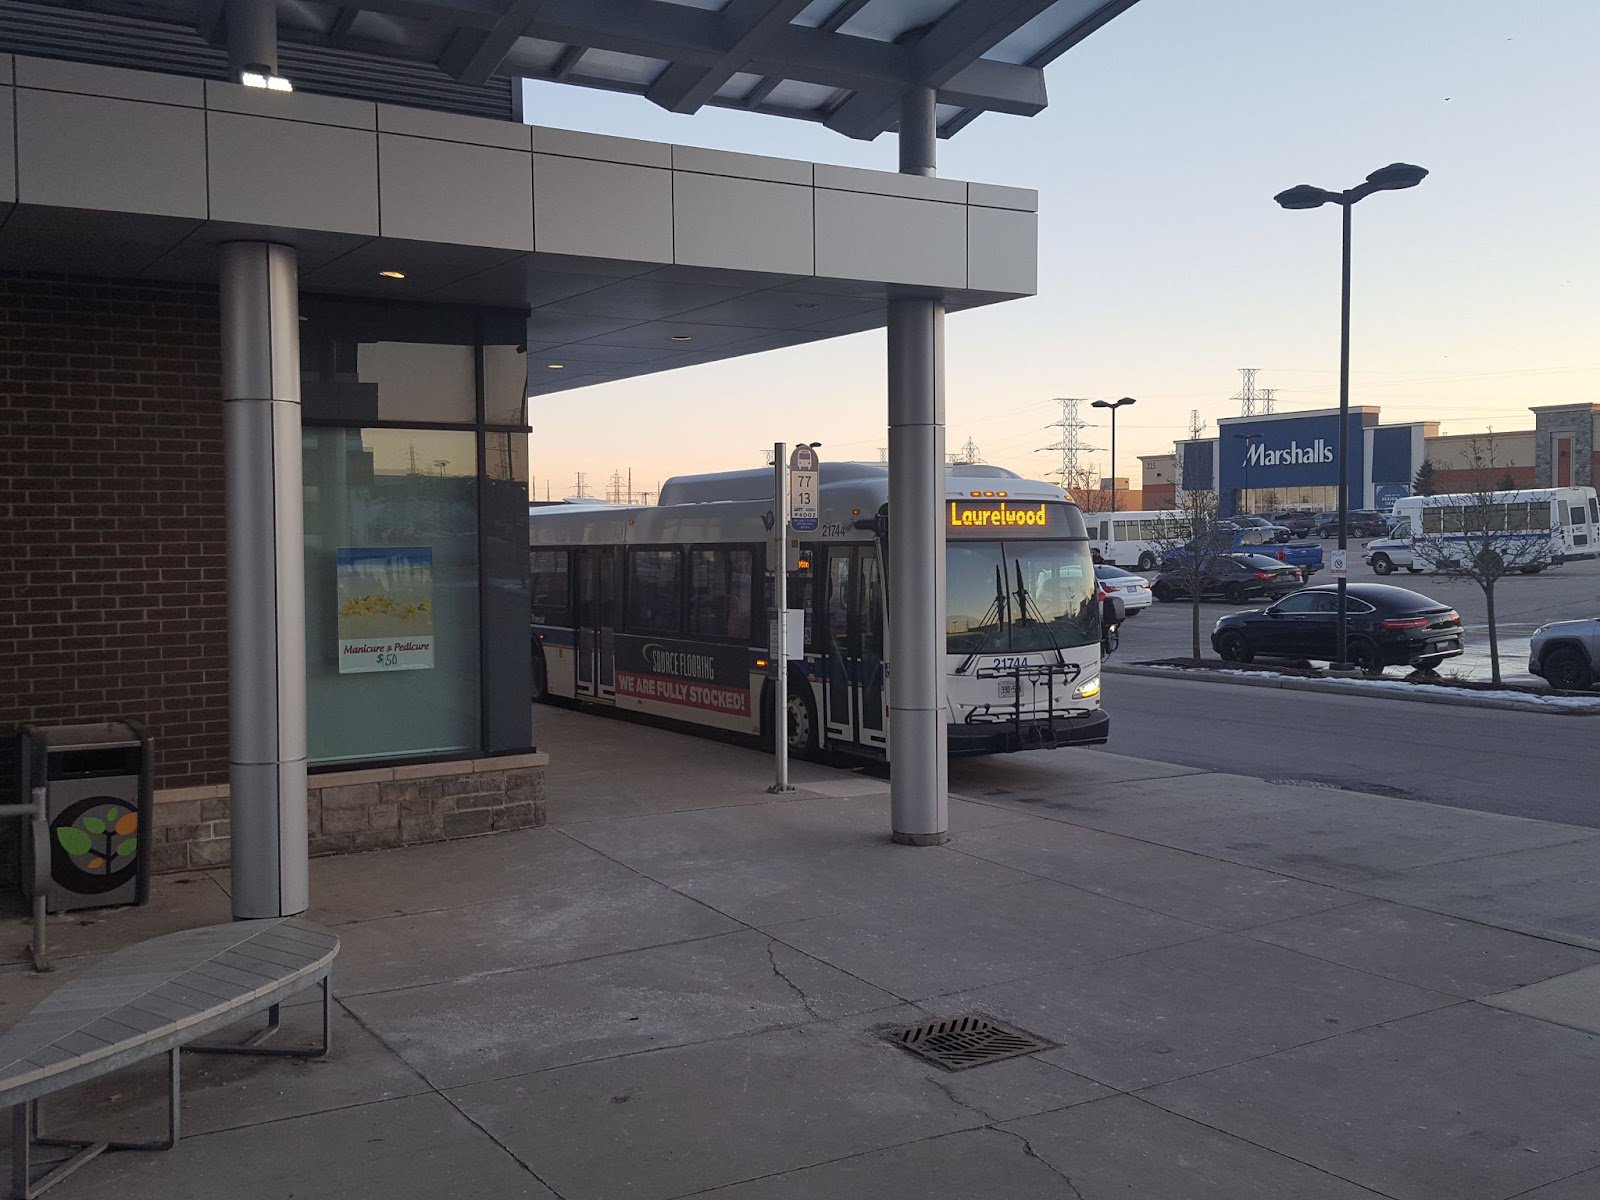 Громадський транспорт, м. Уотерлу, Онтаріо, січень 2023 року